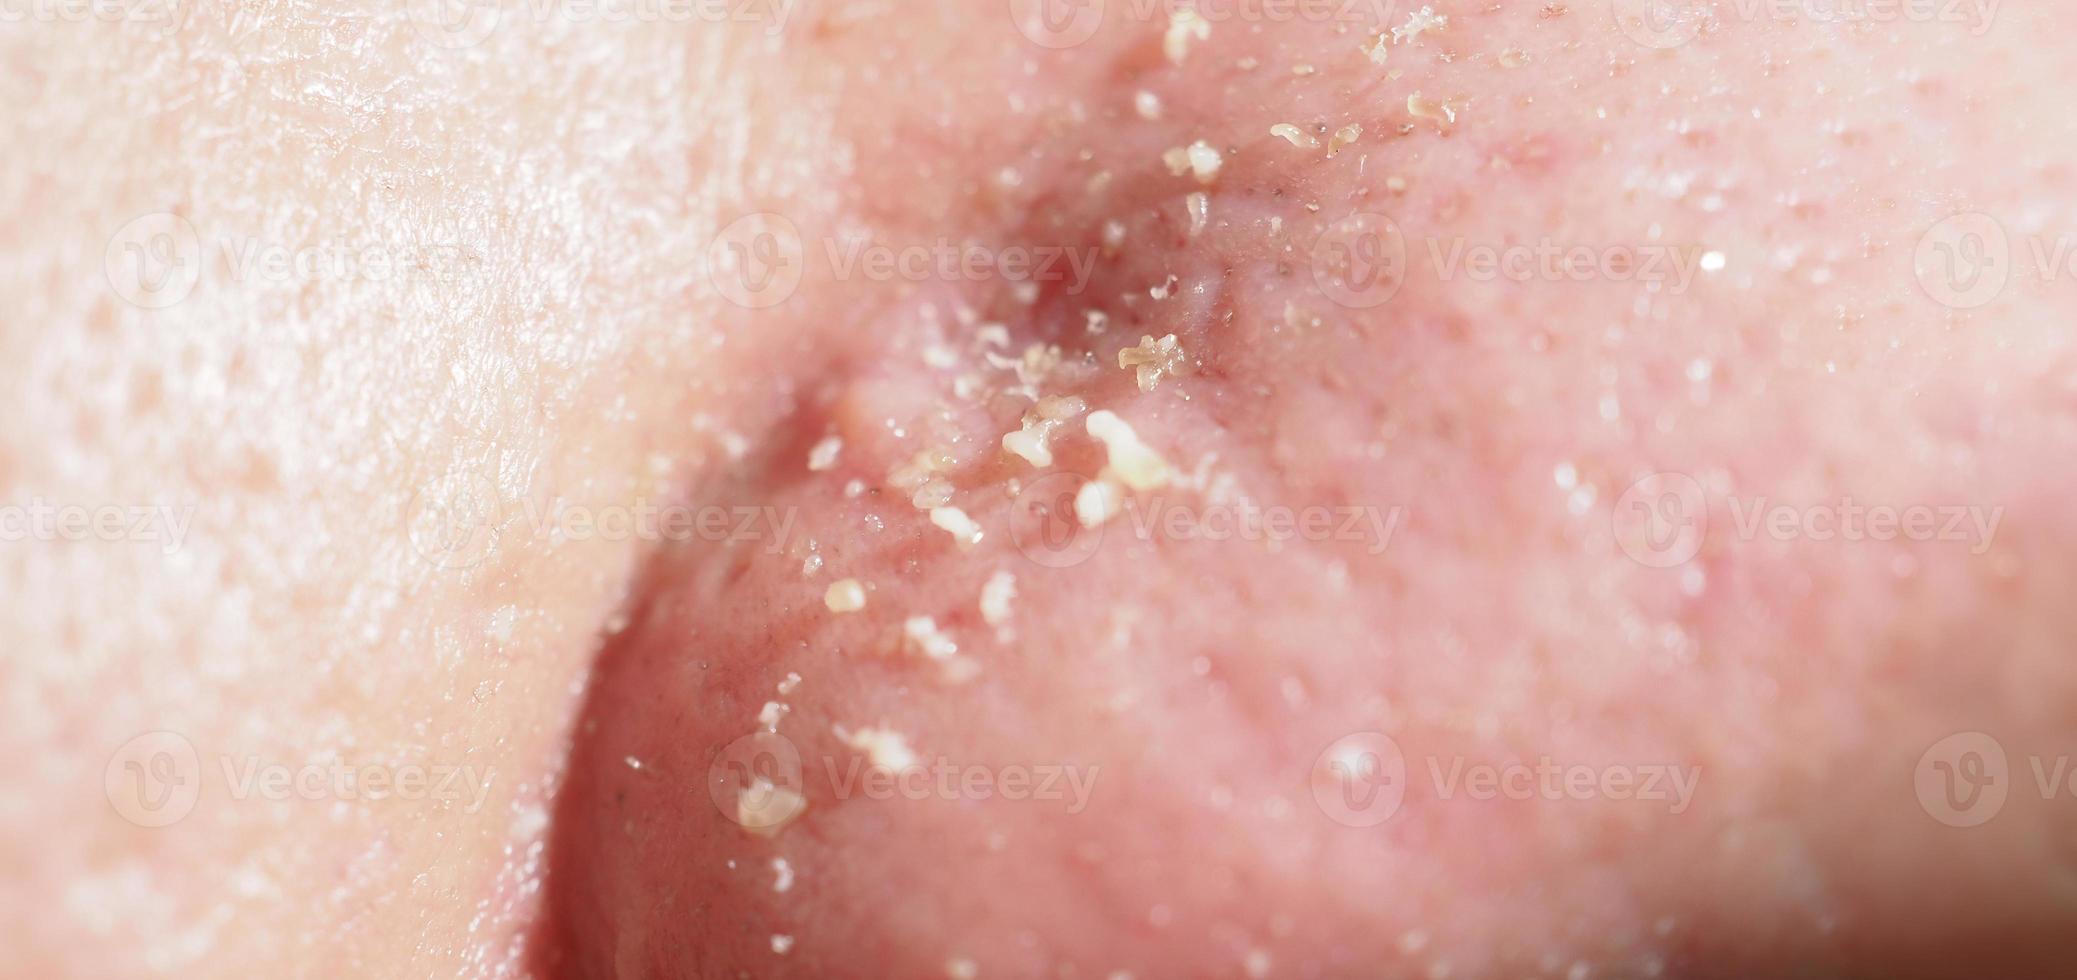 acne en probleem poriën. wit en mee-eter puistjes van neus- poriën. foto